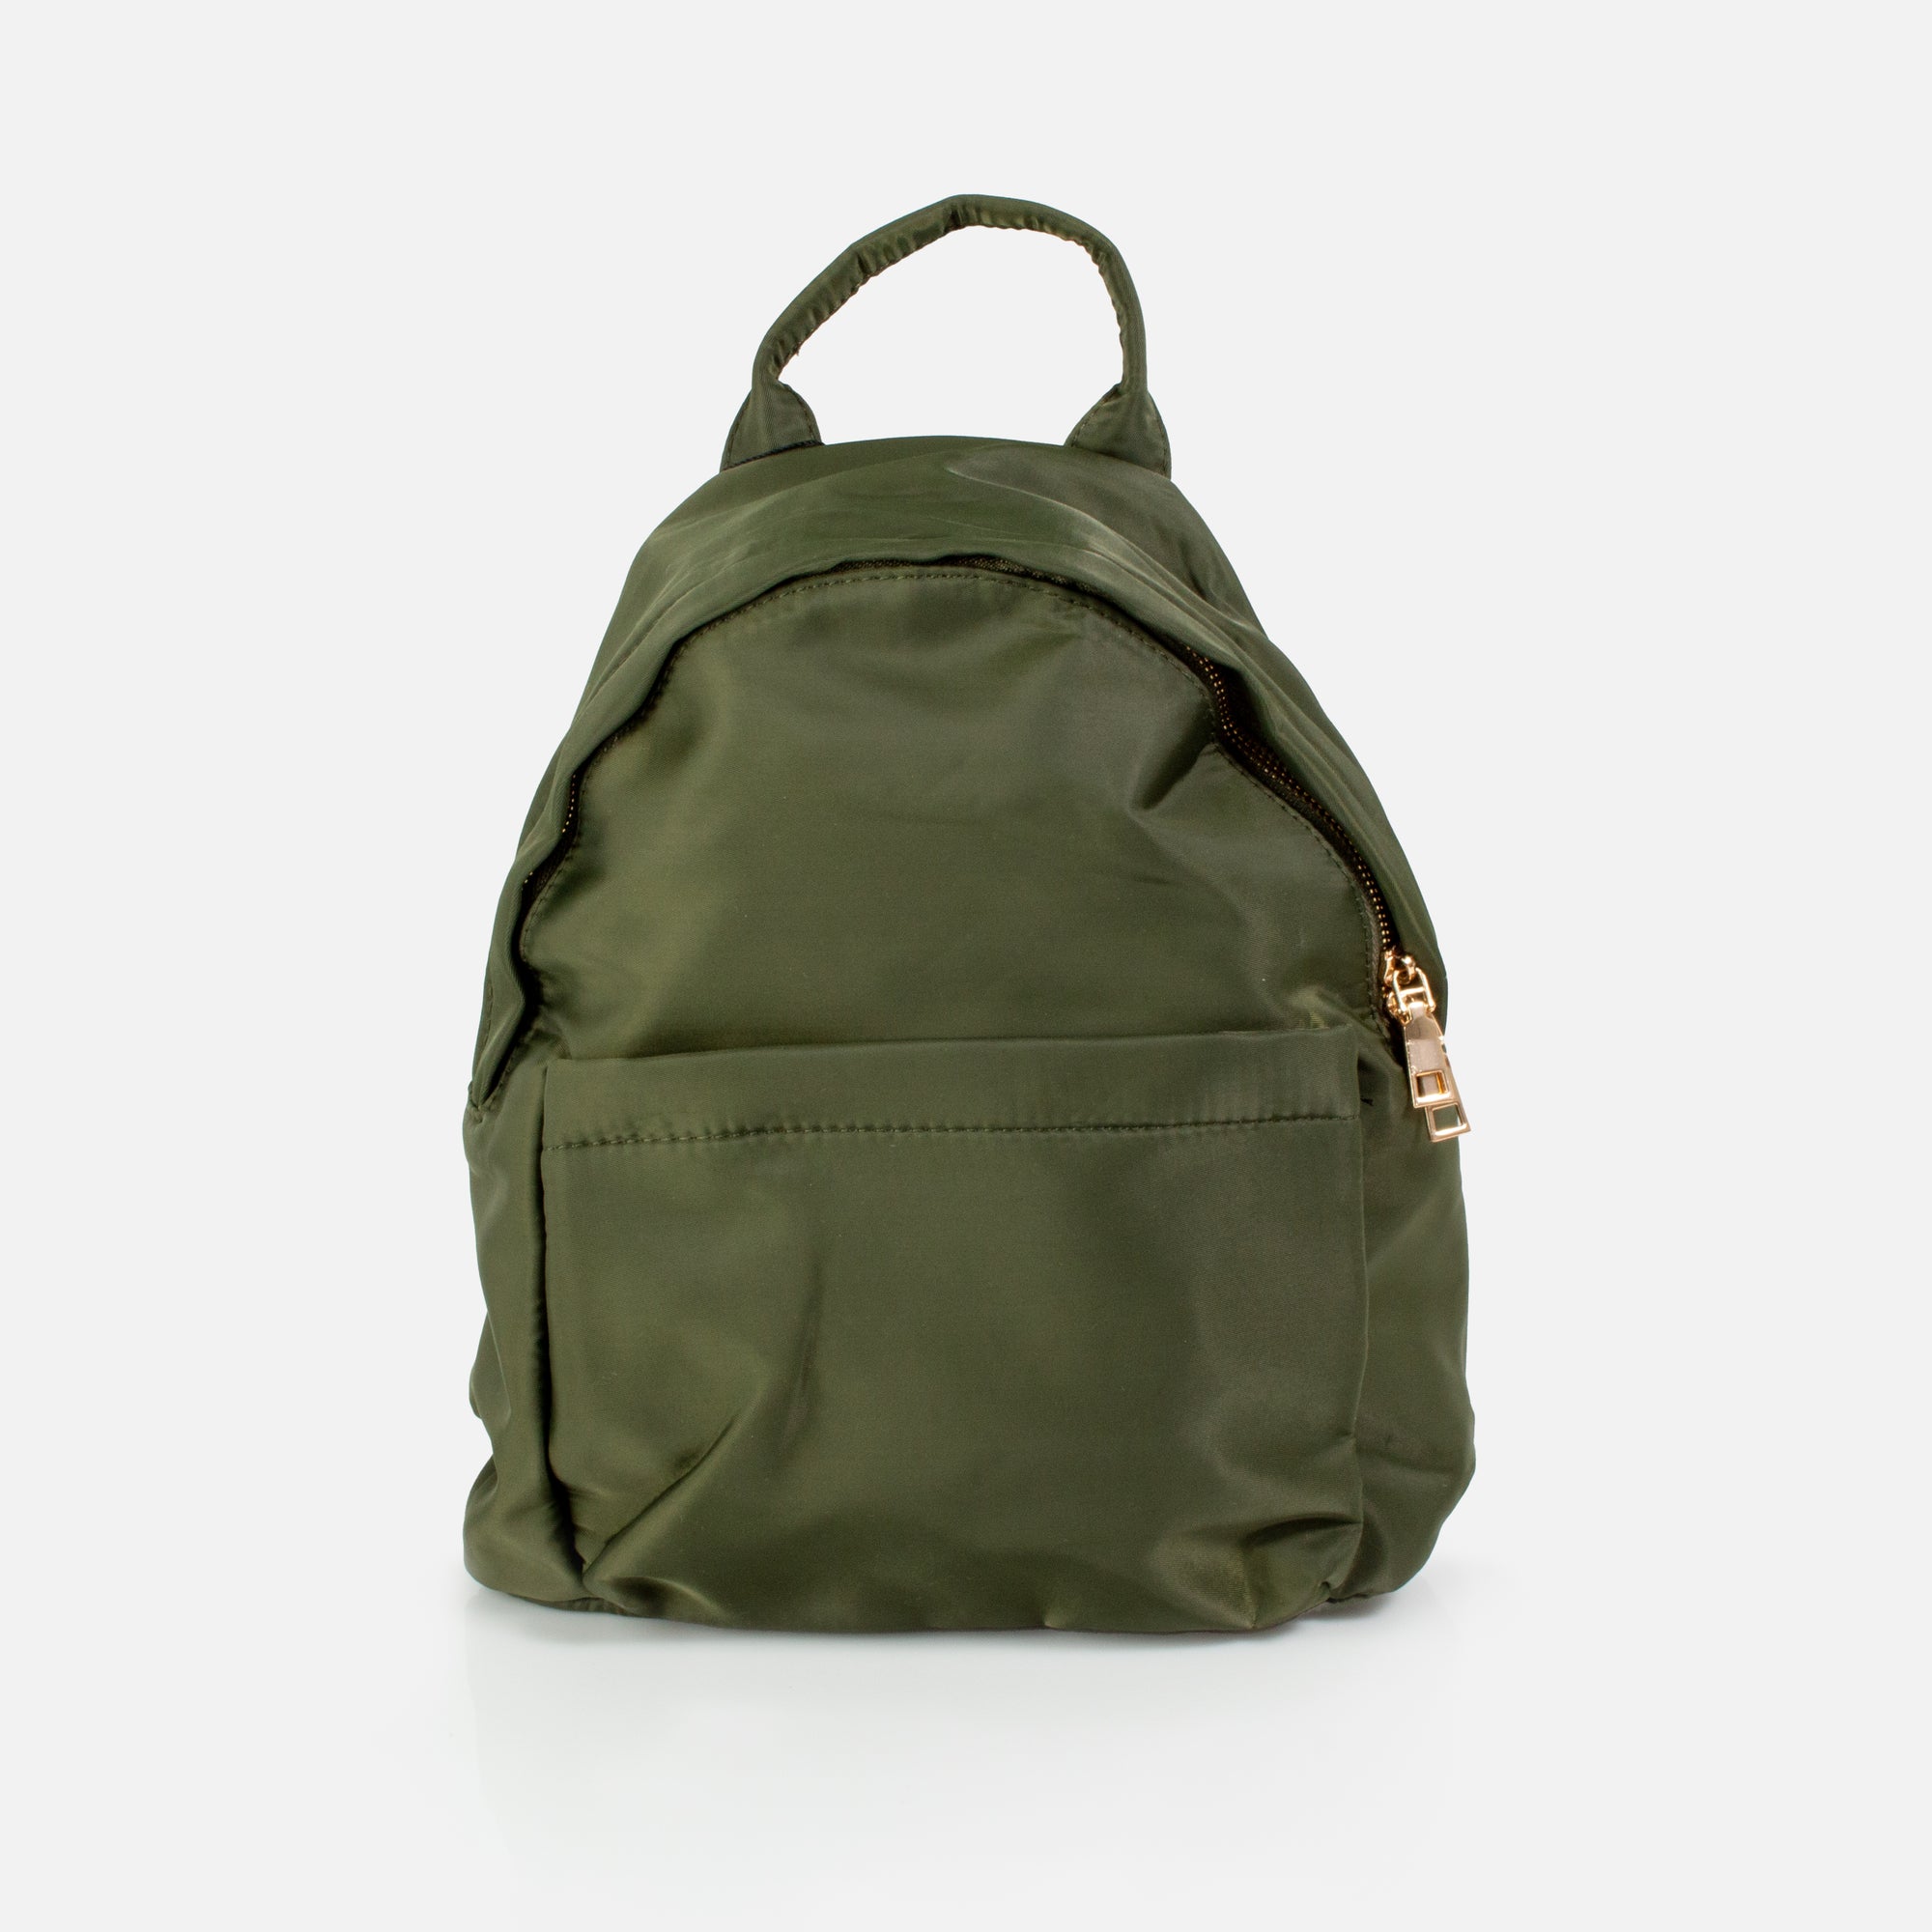 Khaki green backpack